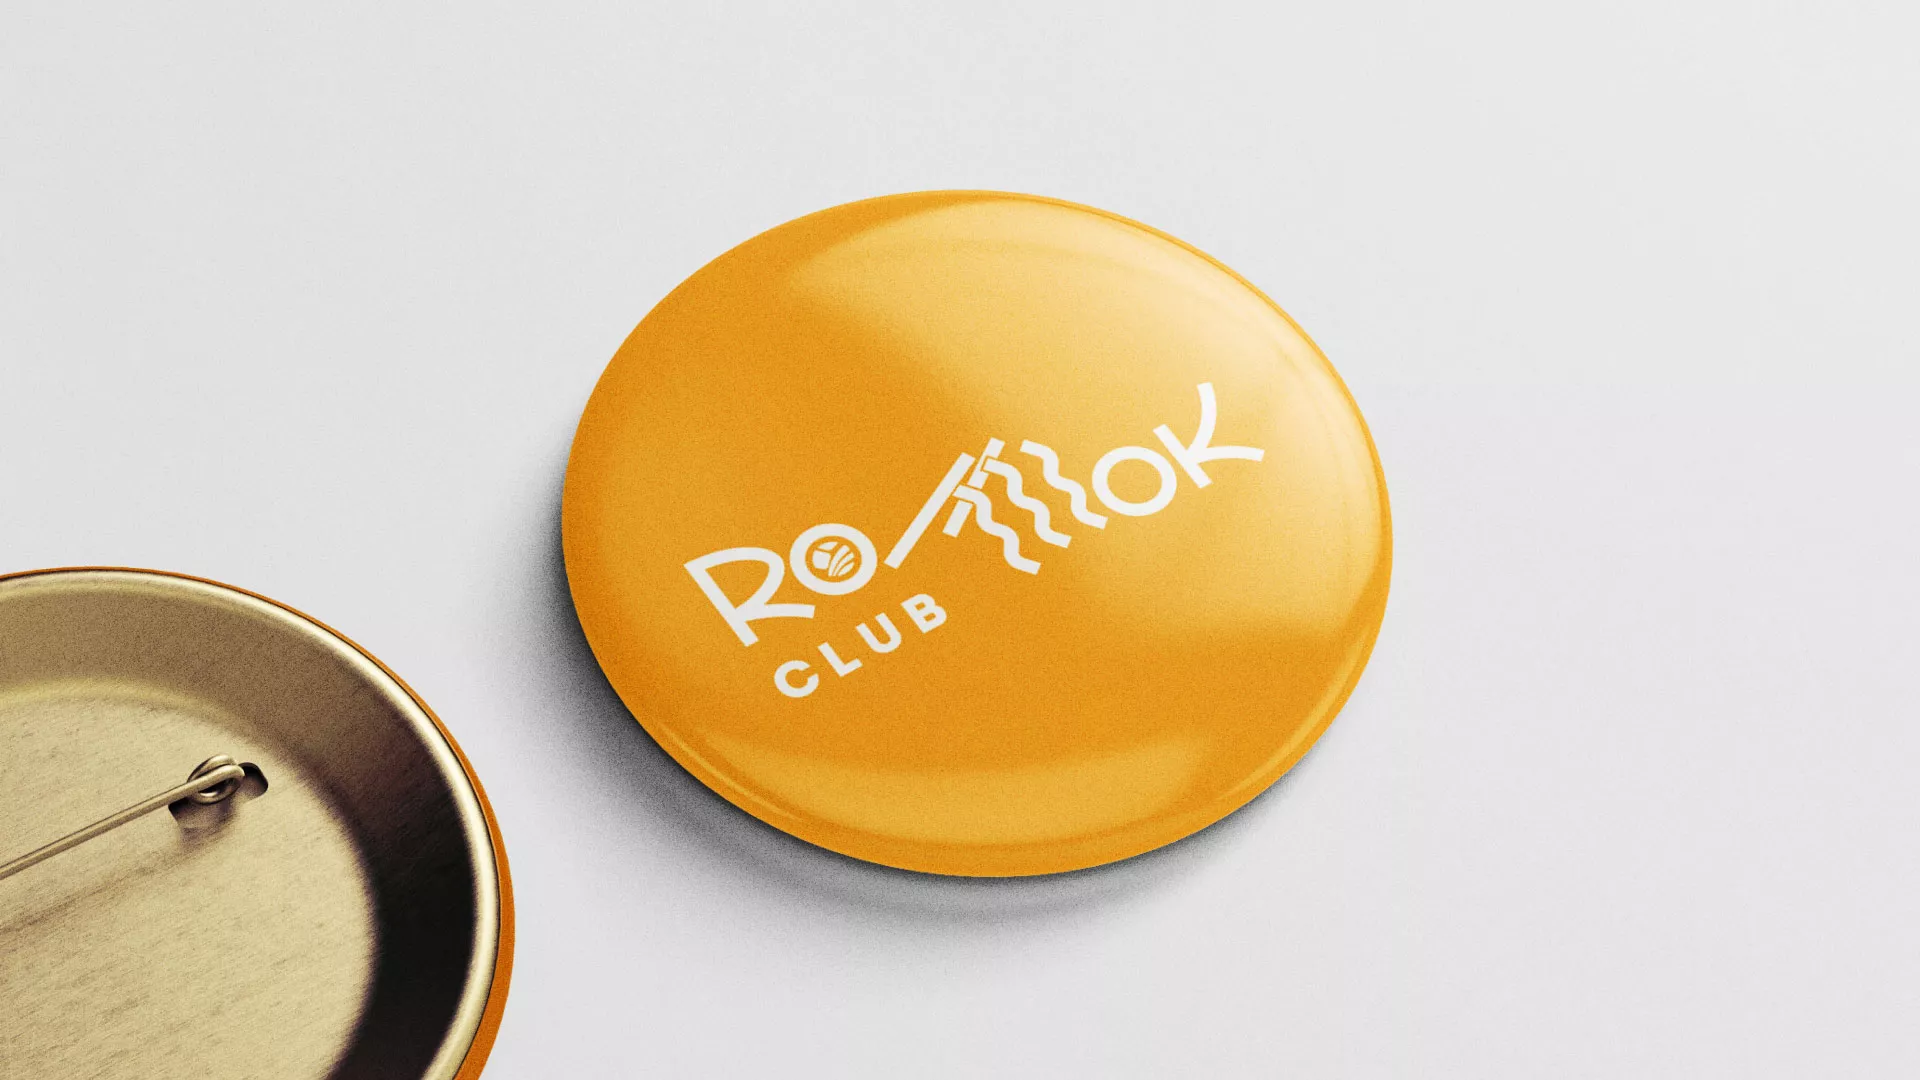 Создание логотипа суши-бара «Roll Wok Club» в Юрюзани